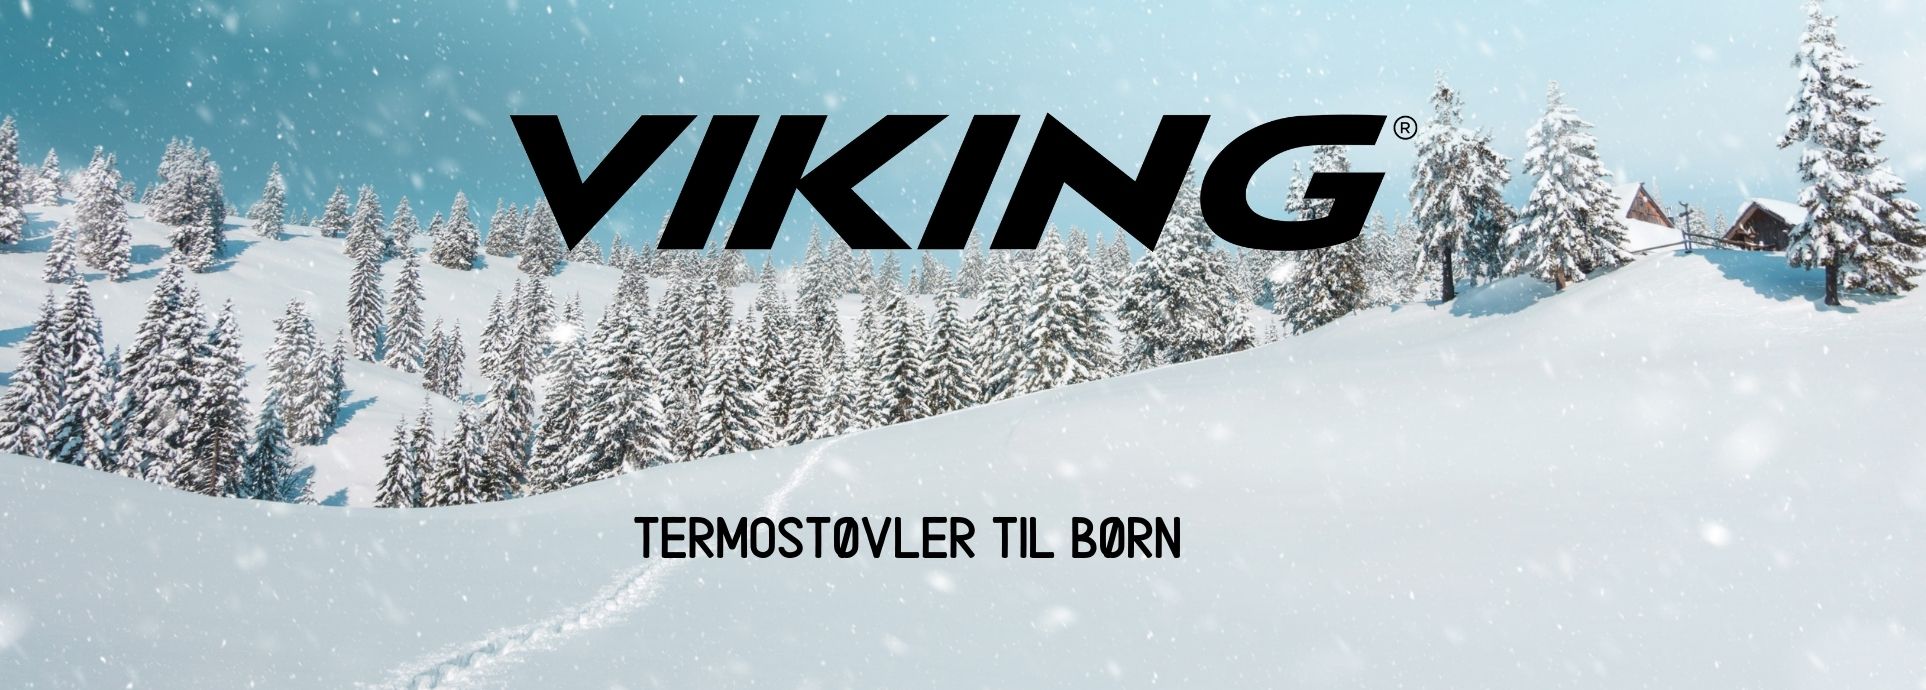 Viking termostøvler til børn